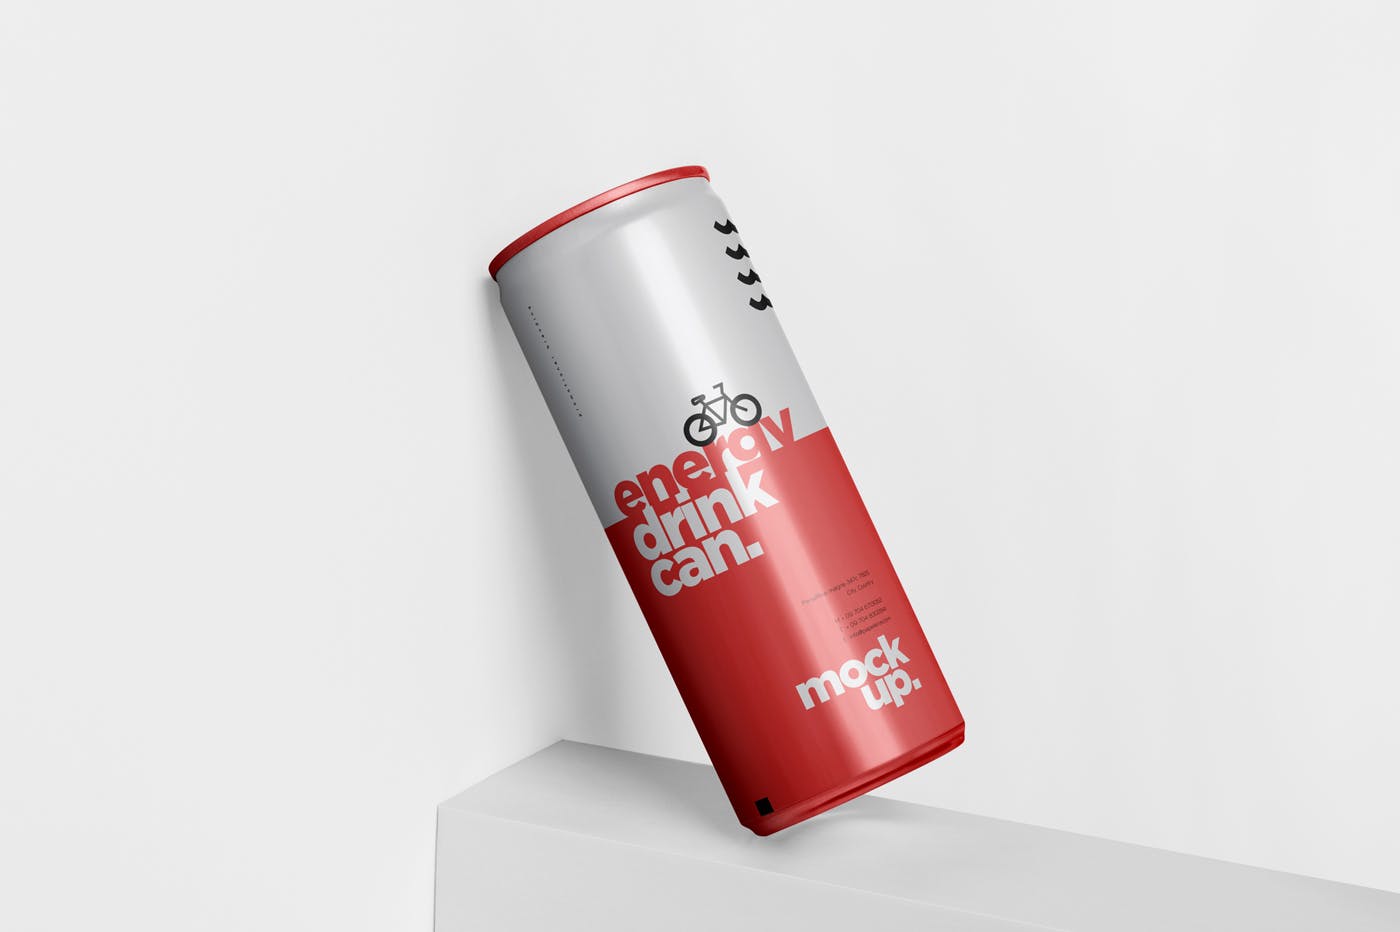 能量饮料易拉罐罐头外观设计第一素材精选模板 Energy Drink Can Mock-Up – 250 ml插图(3)